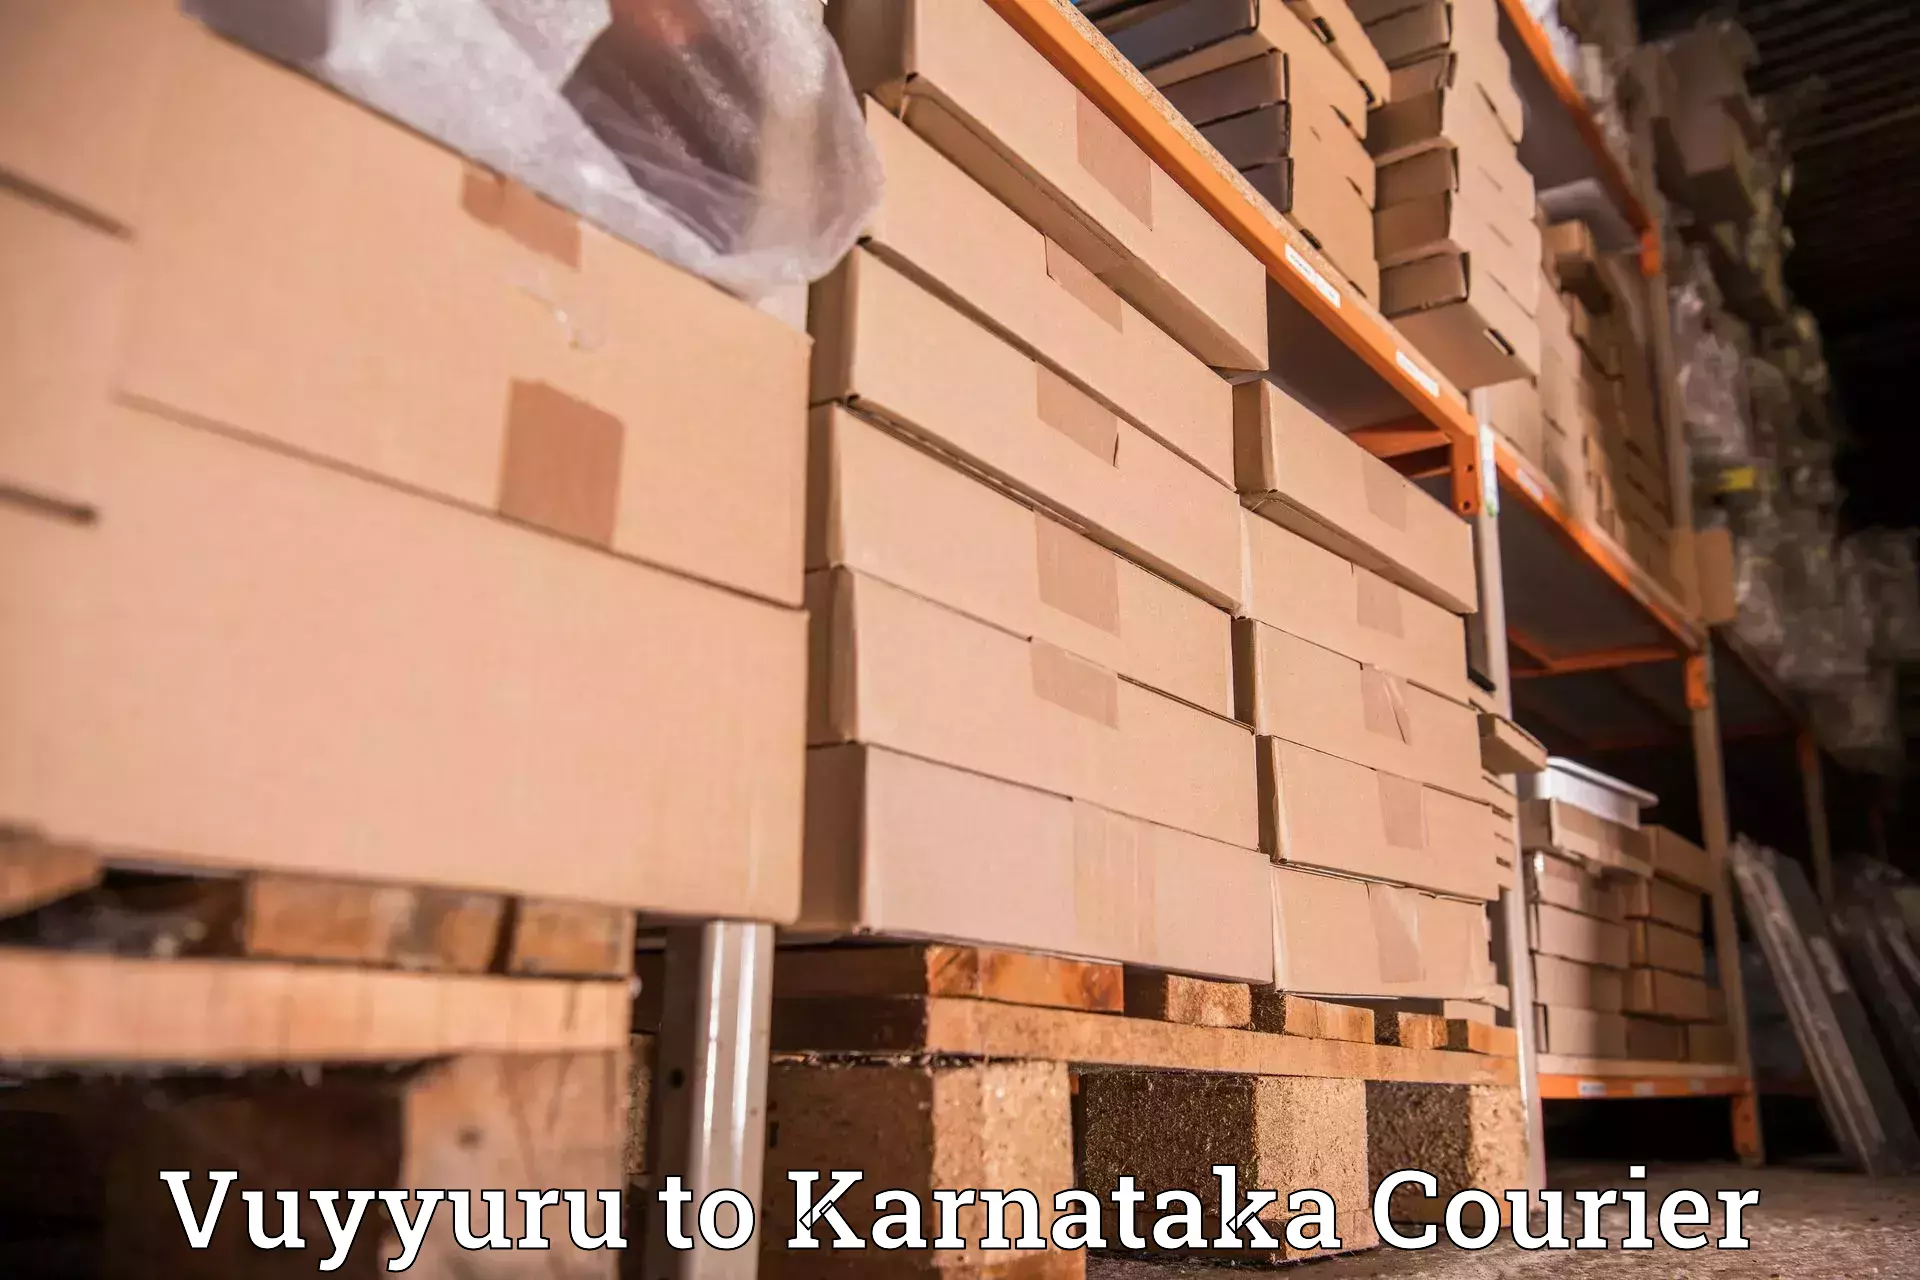 Tracking updates Vuyyuru to Karnataka